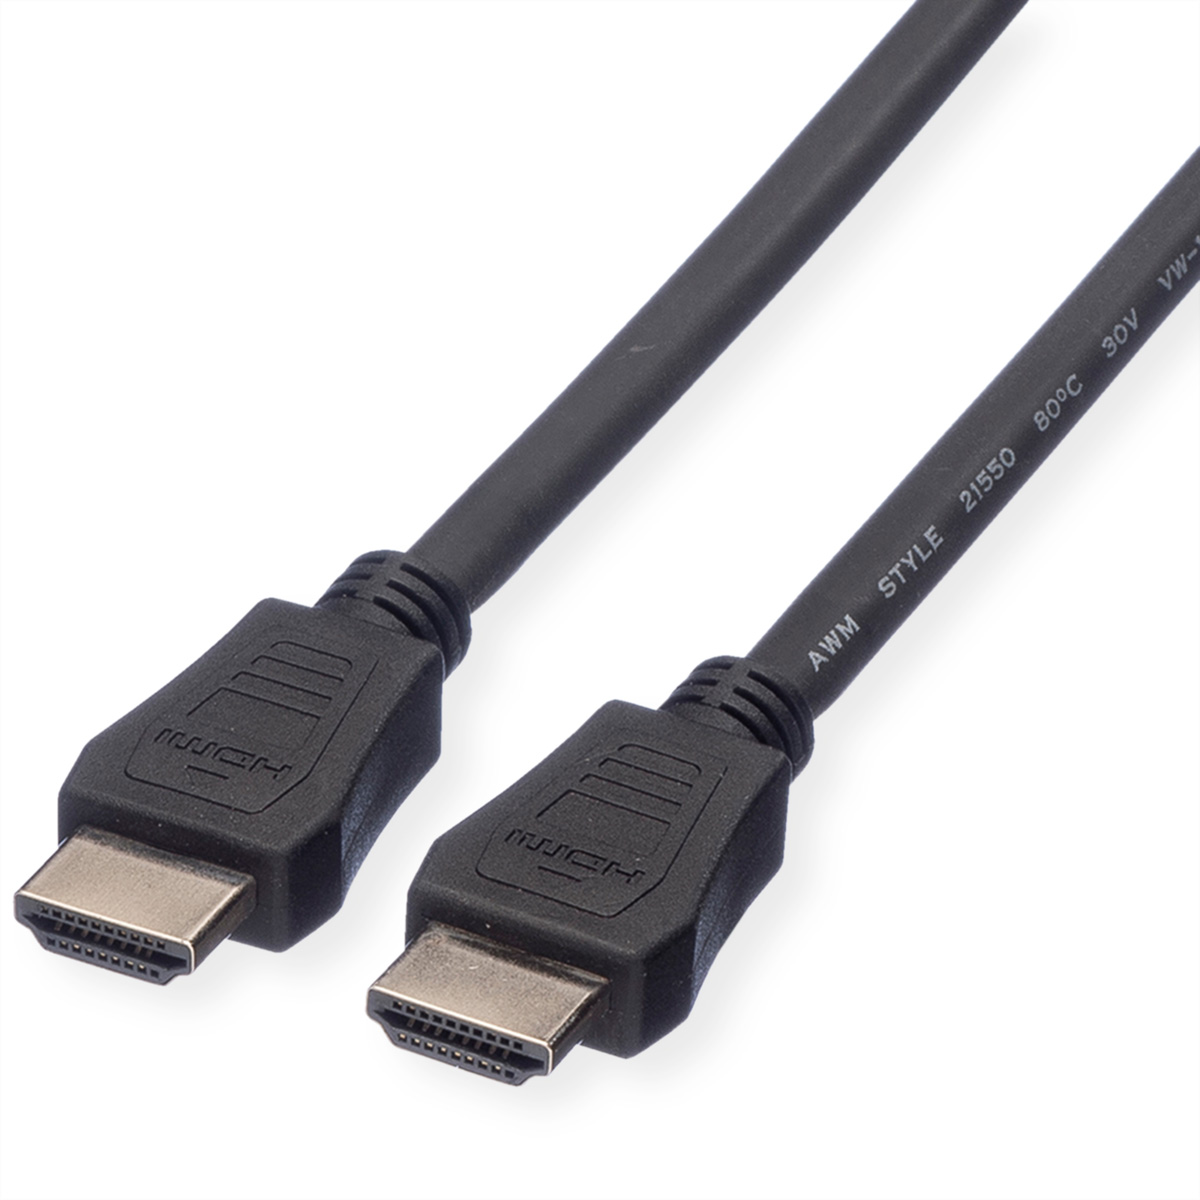 VALUE HDMI High Speed Kabel mit Ethernet, LSOH, schwarz, 1 m